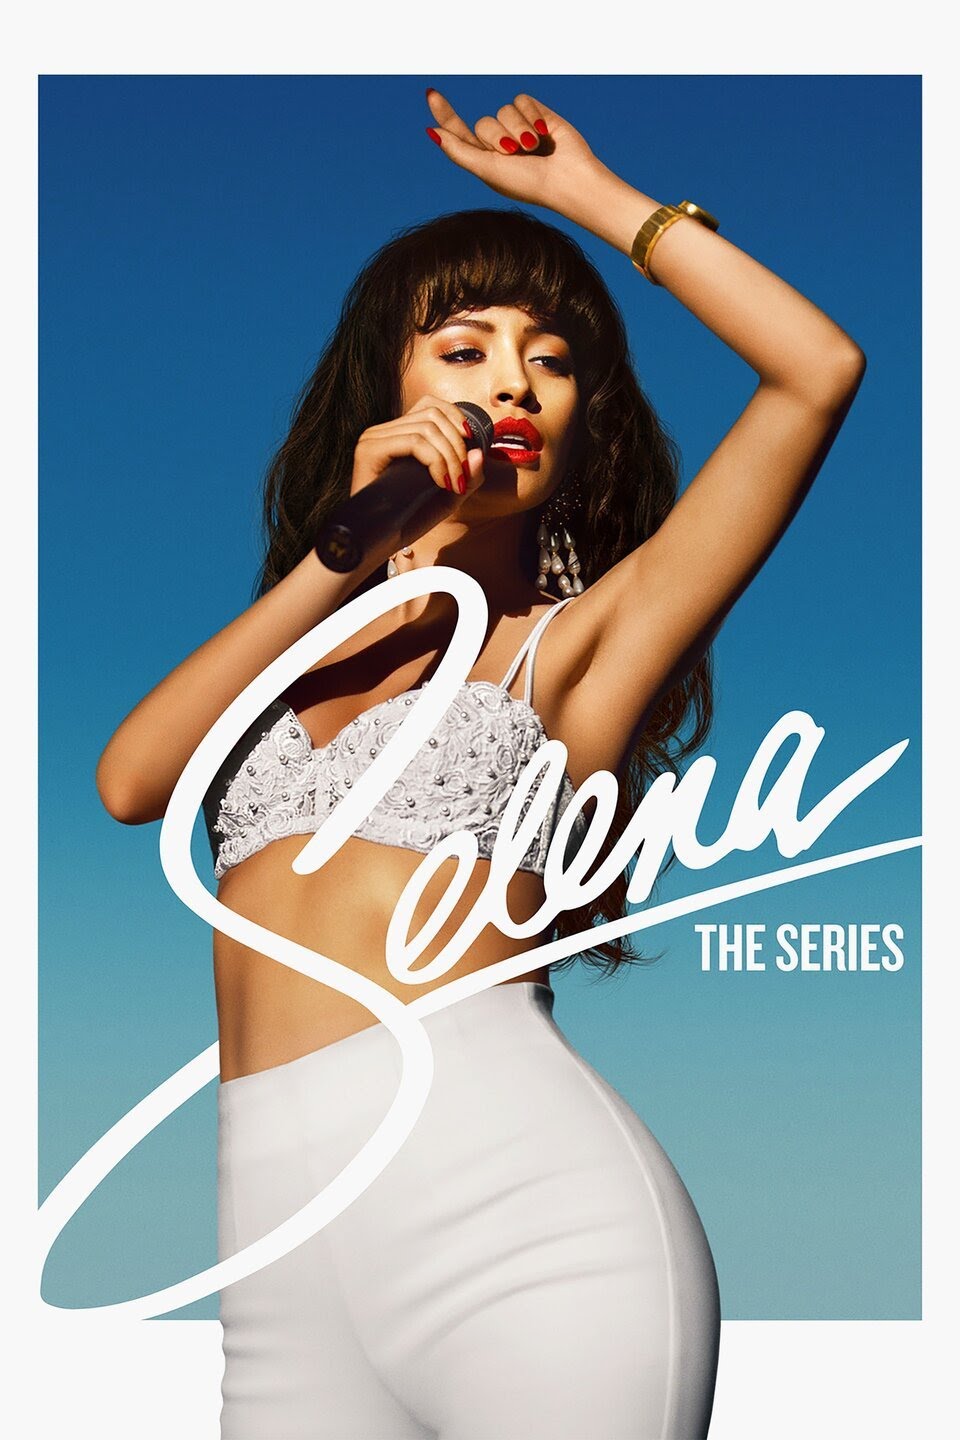 Selena – Como La Flor Lyrics